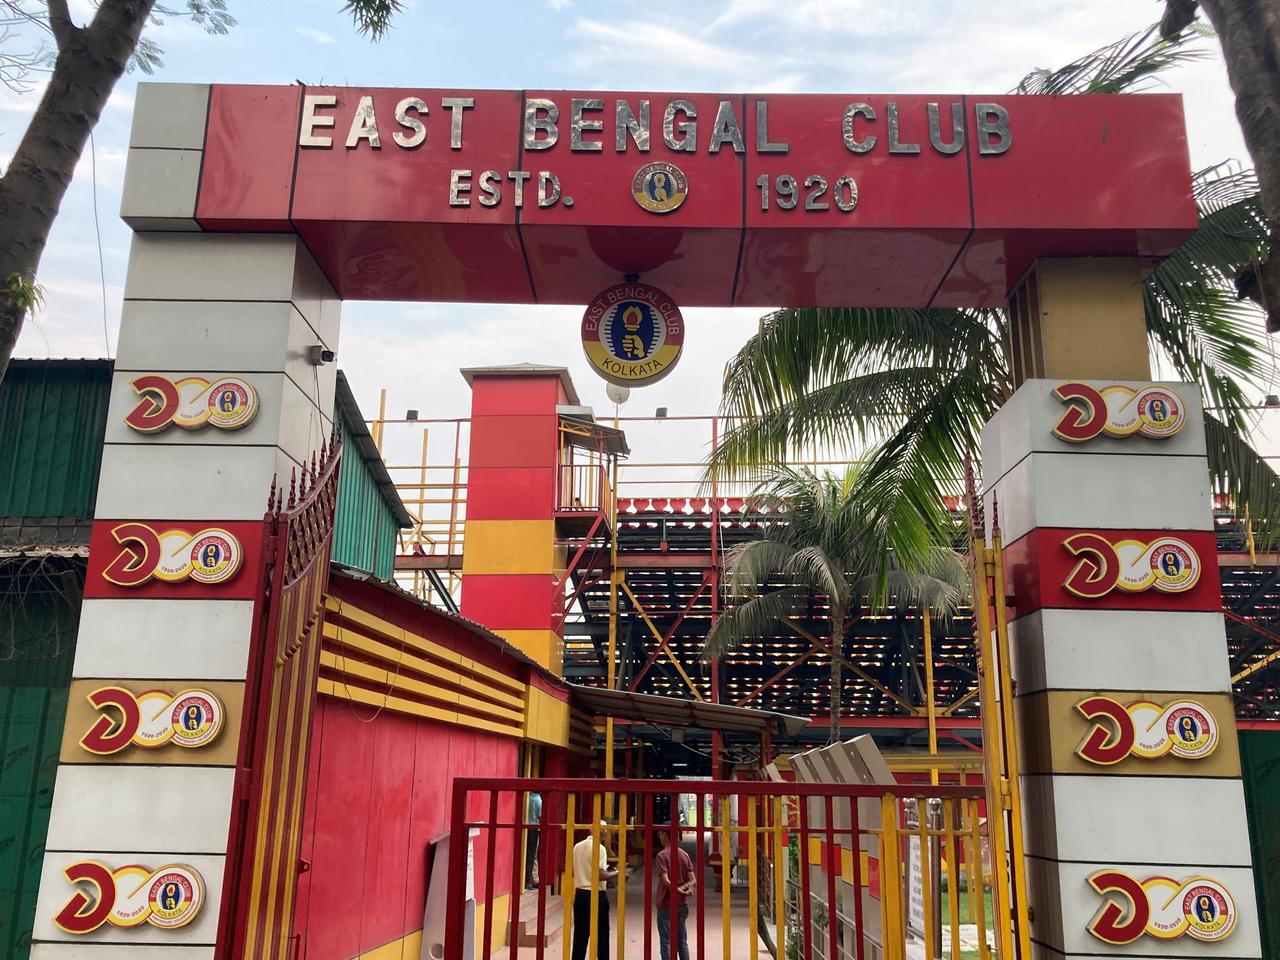 Über einem Eingangstor zum Fußballstadion prangt der Vereinsname "East Bengal Club".